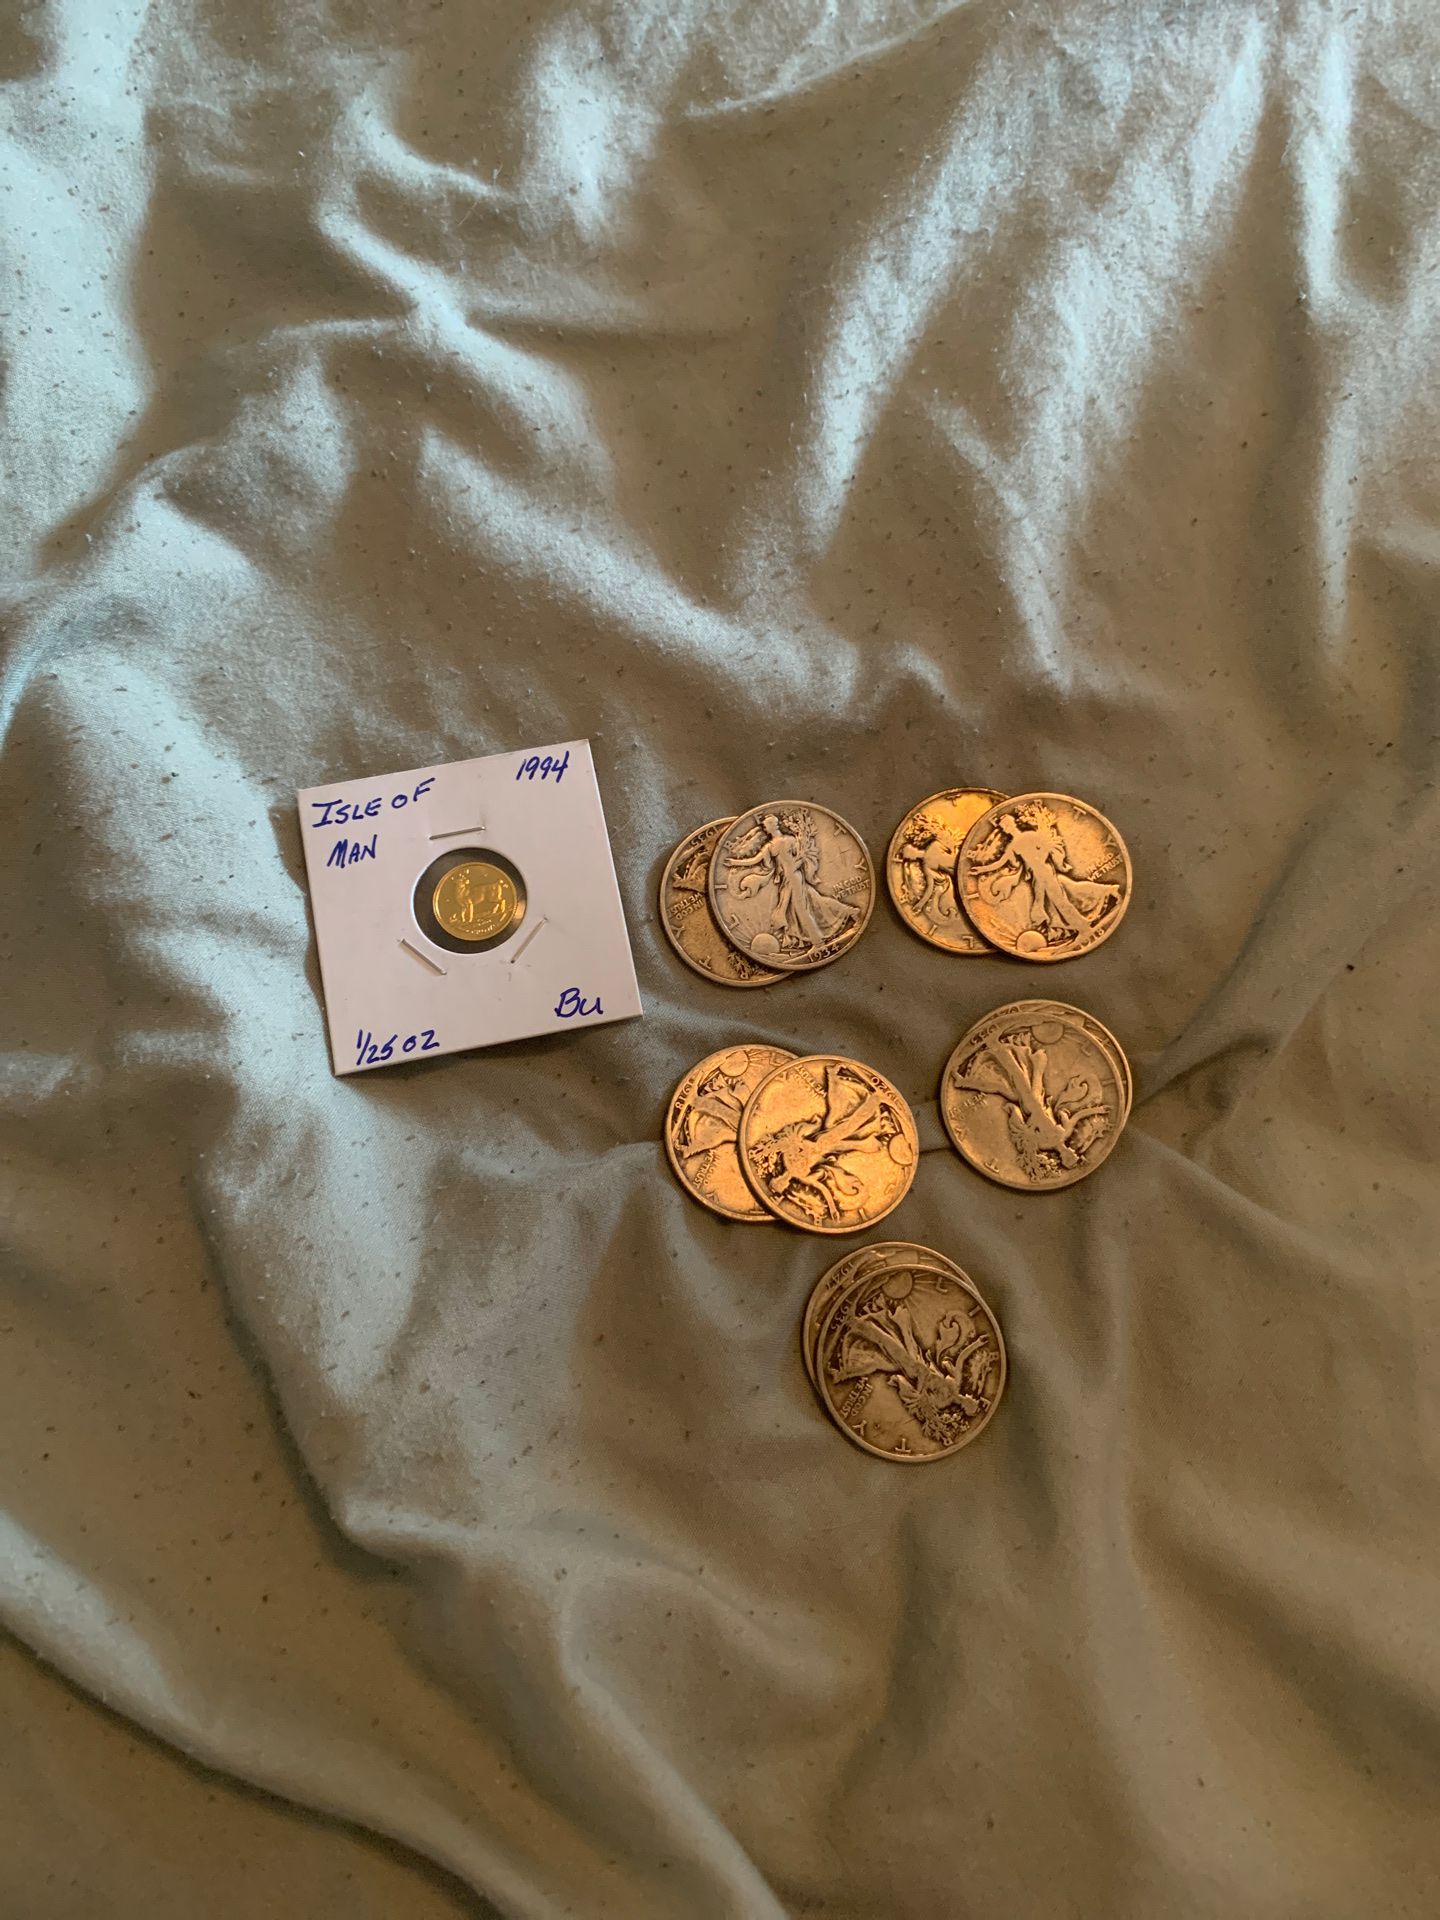 1/25oz gold + 5$ face value silver